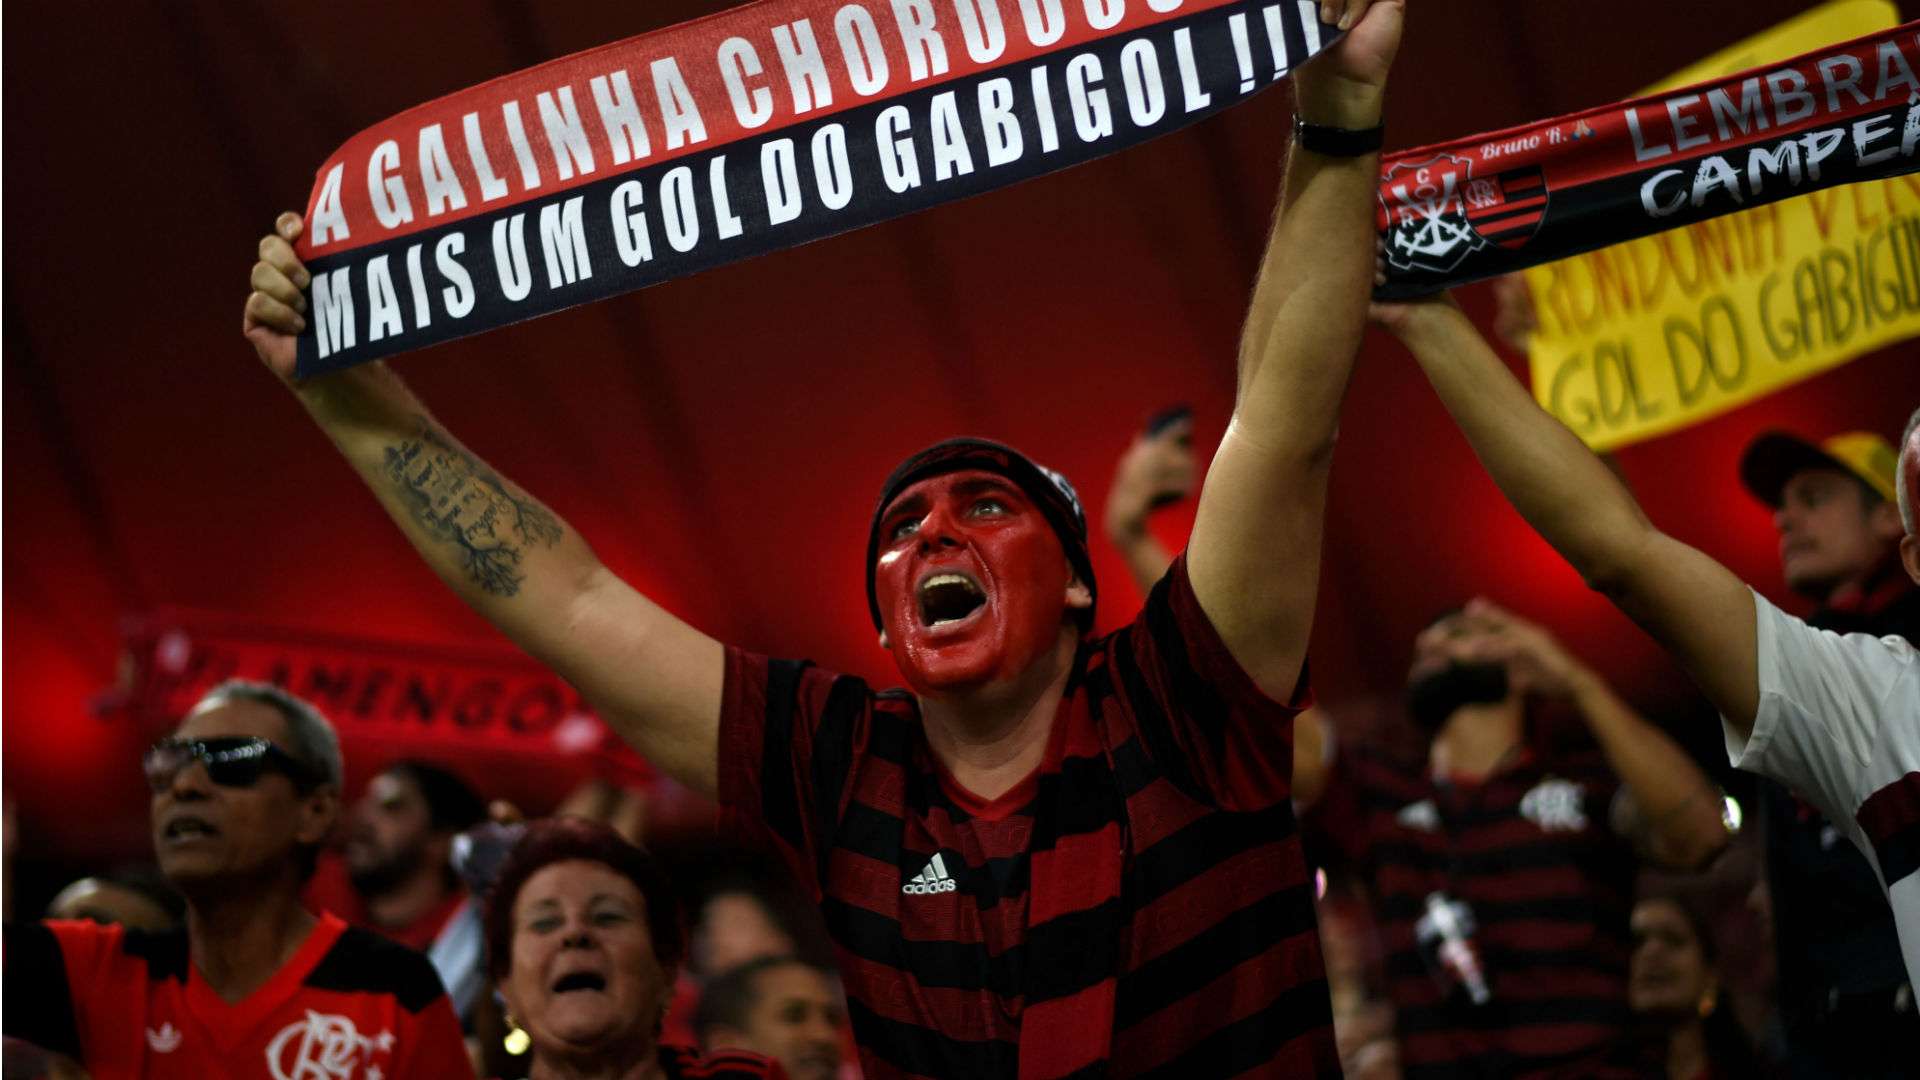 Flamengo torcida 27 10 2019